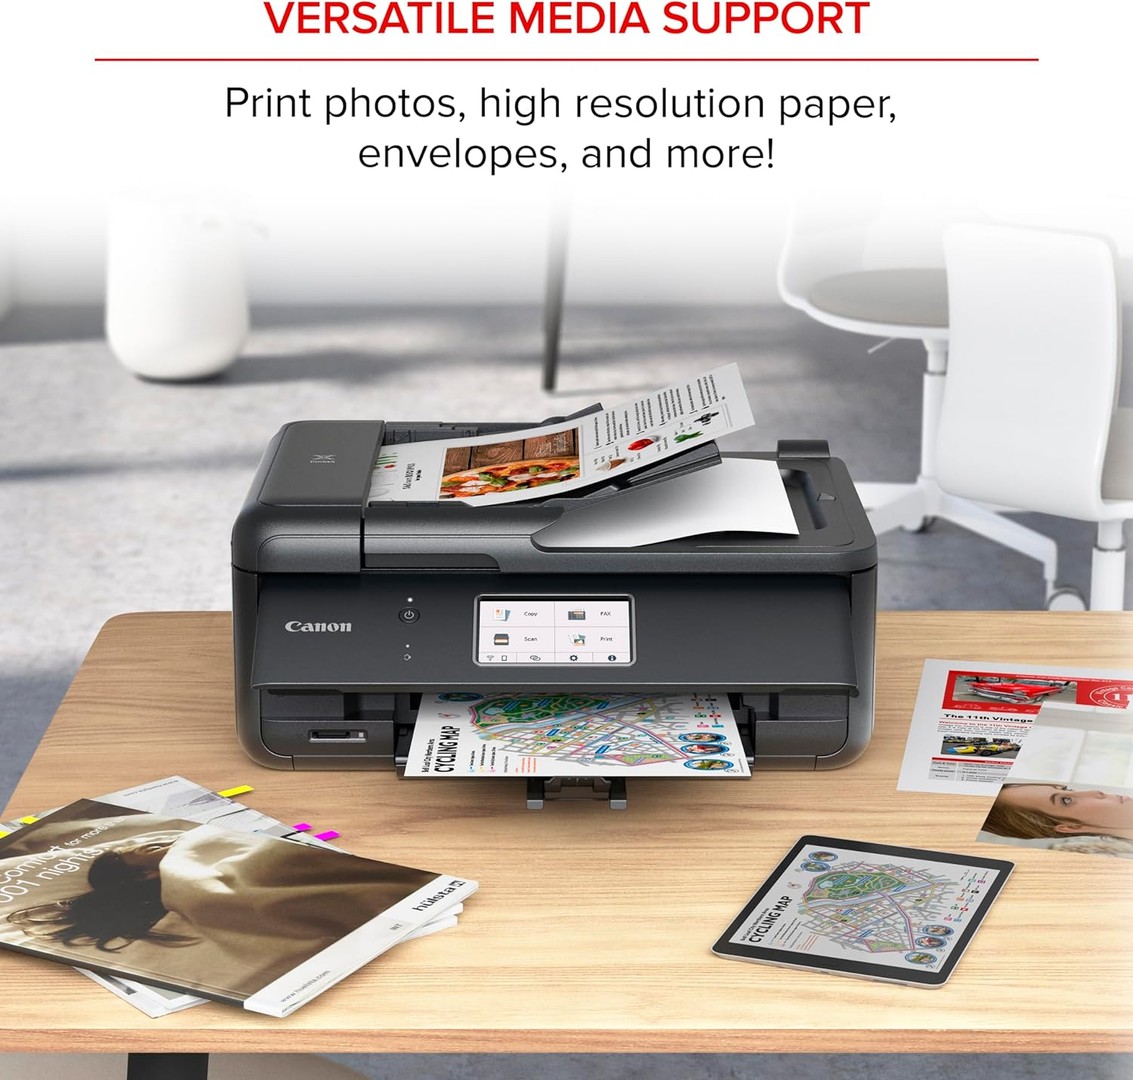 impresoras y scanners - Impresora Canon PIXMA TR8620a Multifuncional, fax, alimentador automático ADF 6